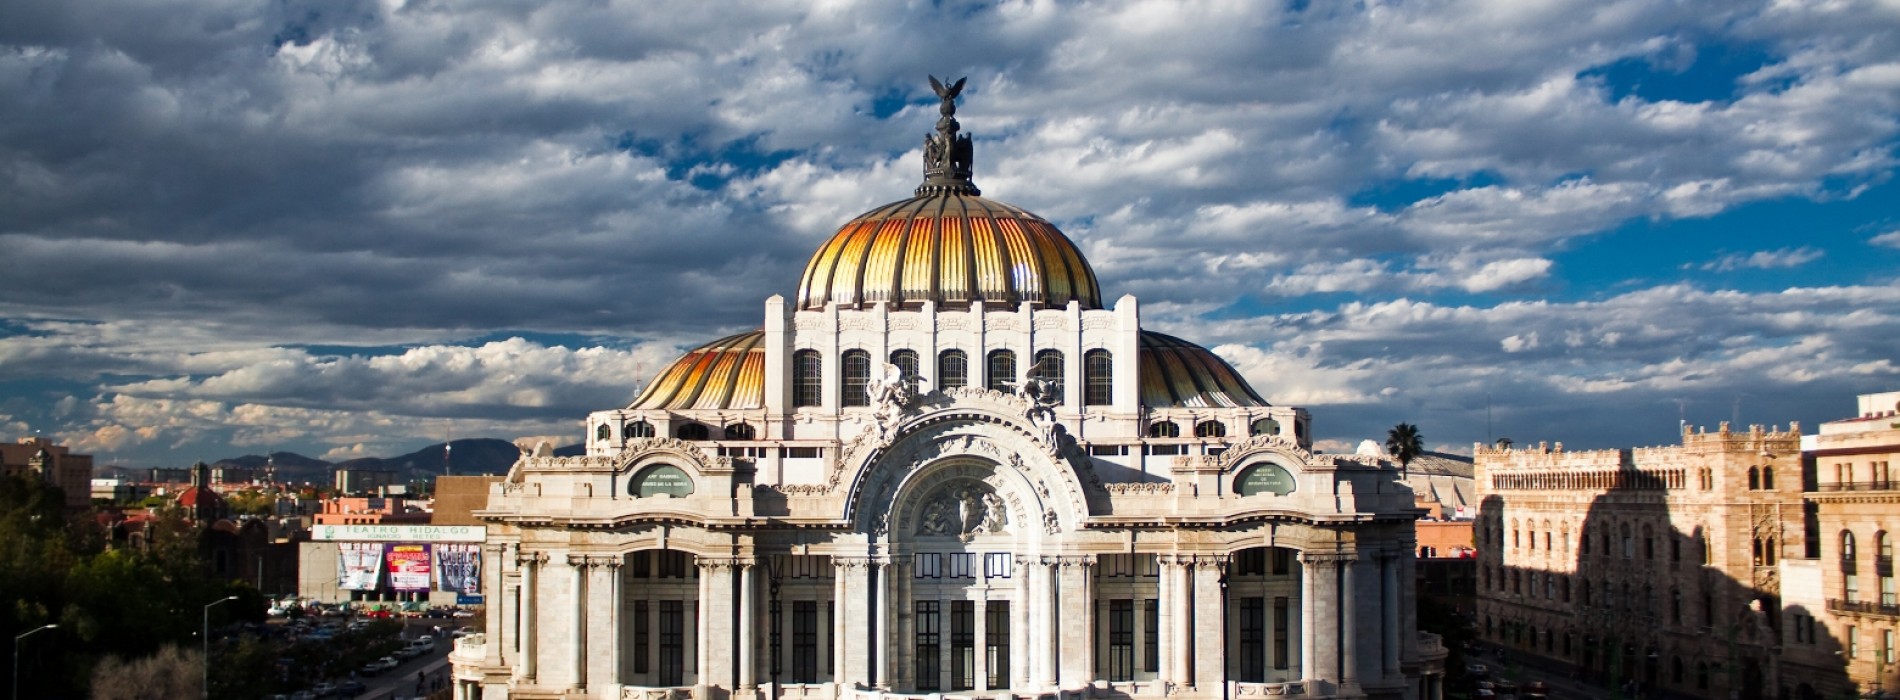 WAT announces unique travel experiences to Cuba and Mexico